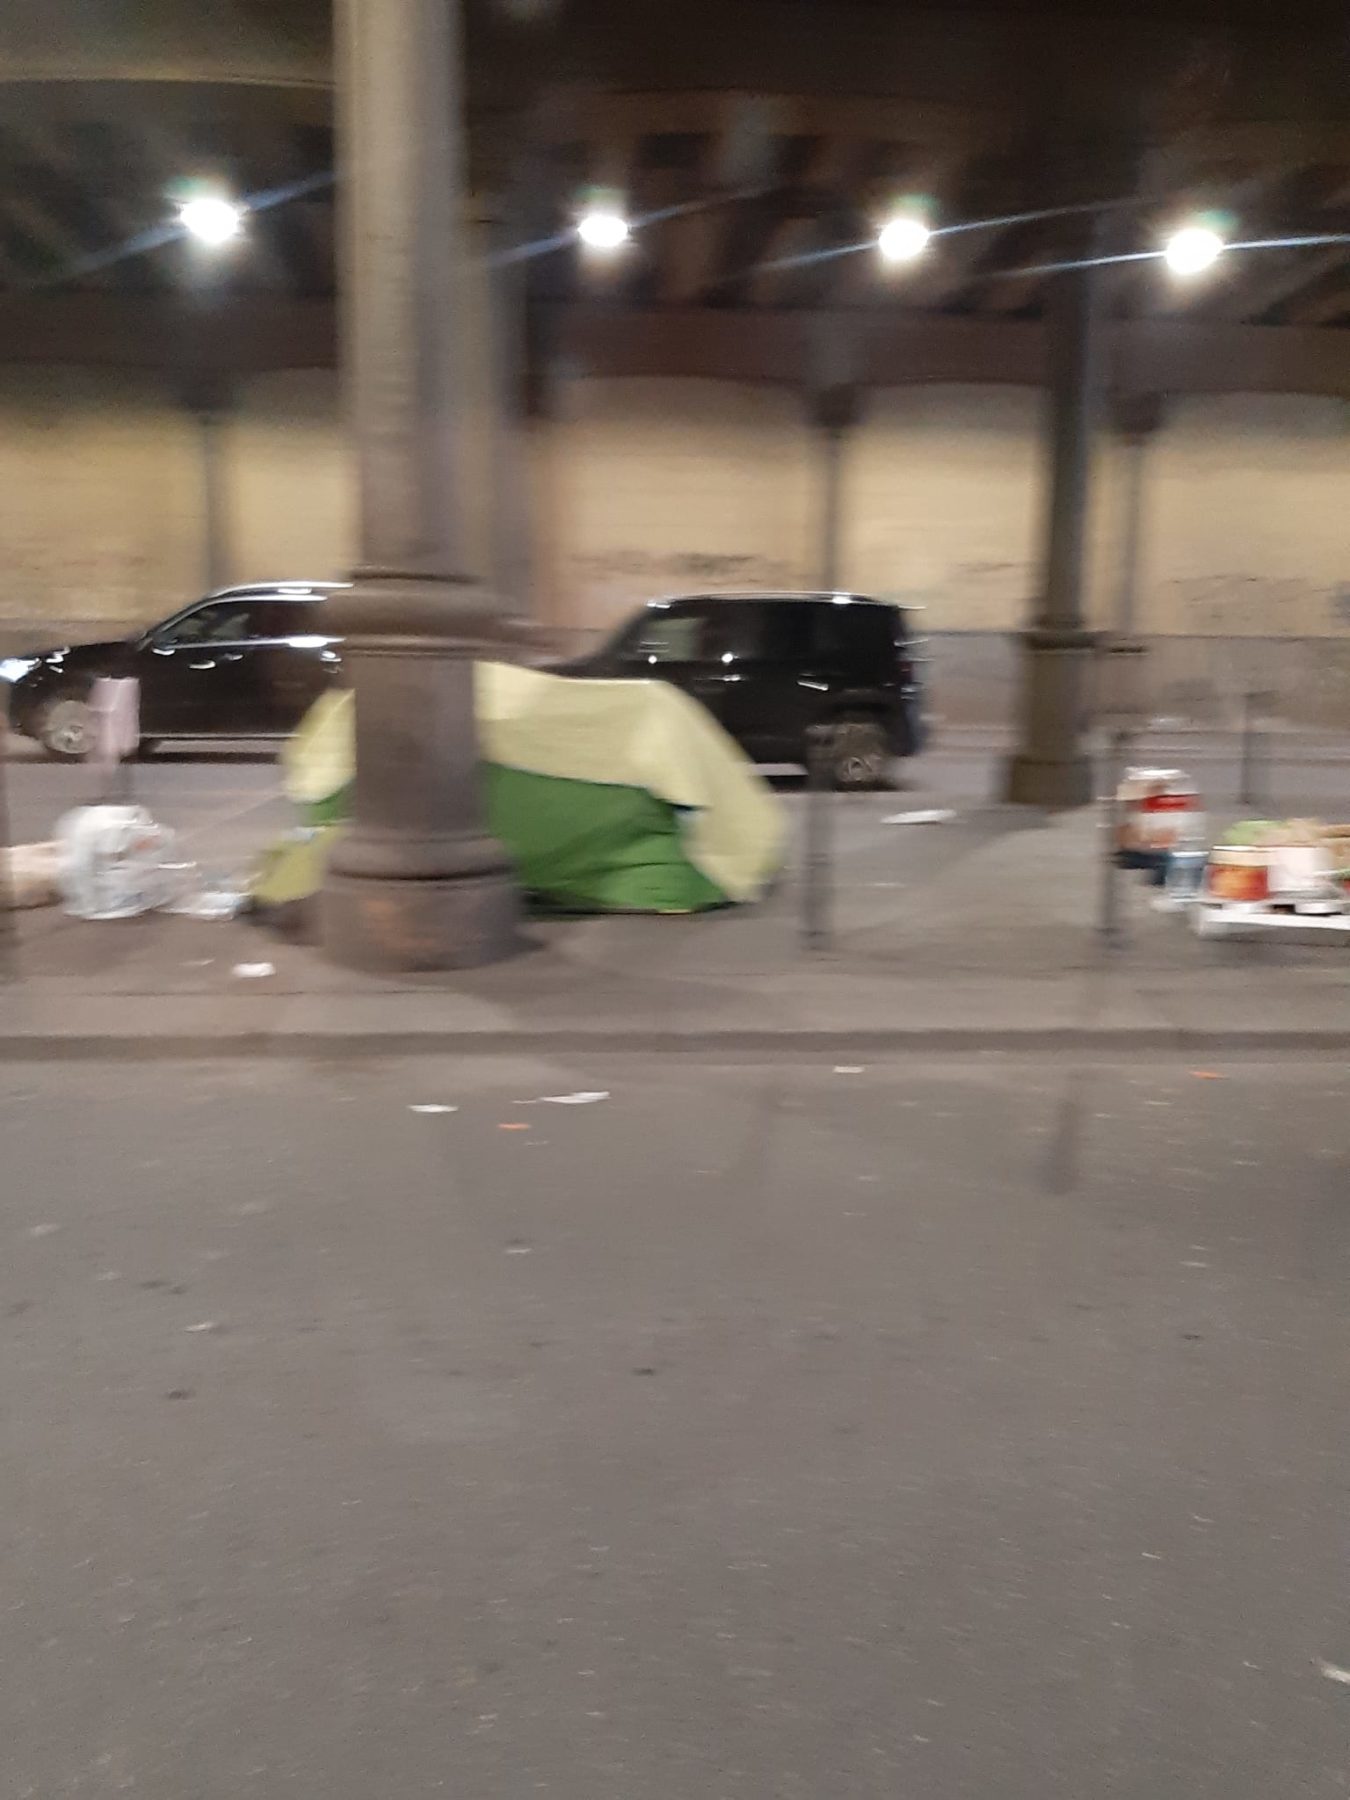 Ponte sotto la ferrovia della stazione Centrale a Milano. Diversi senza tetto dormono lì